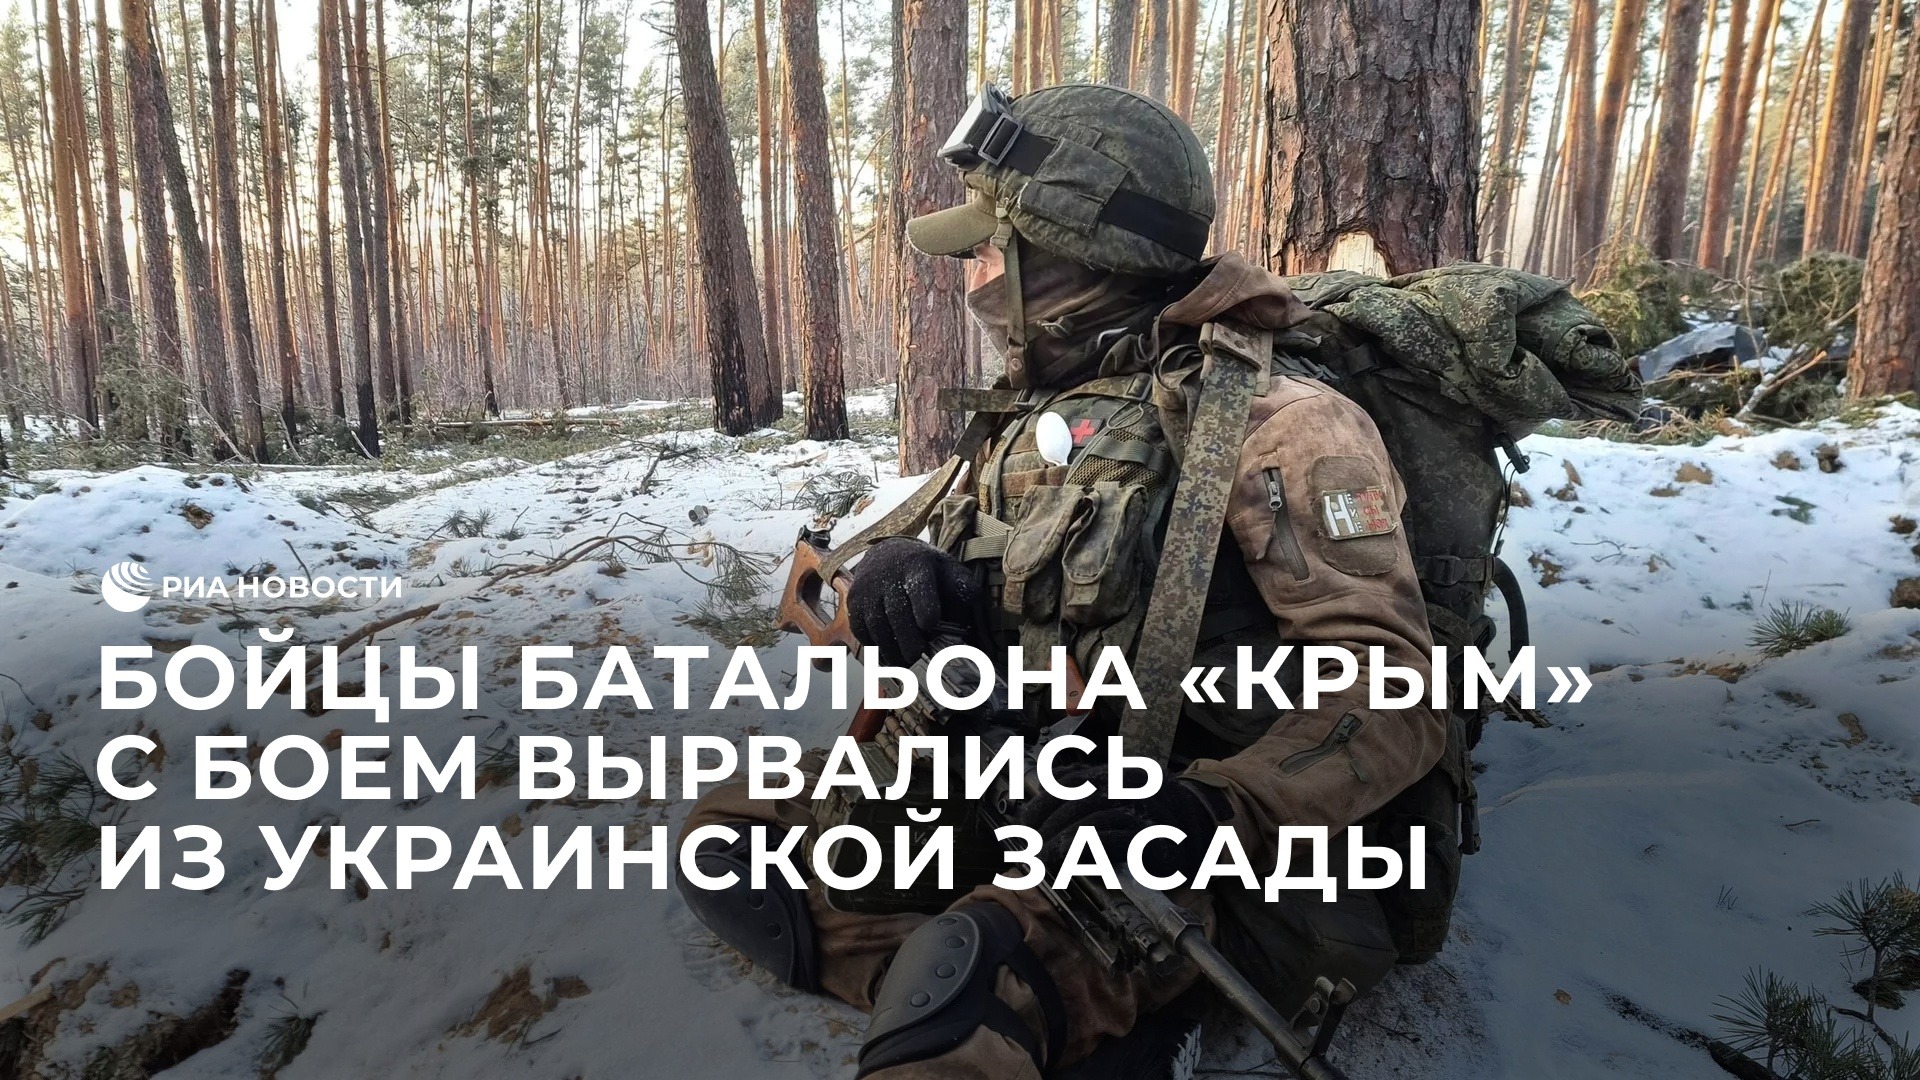 Бойцы батальона "Крым" вырвались из украинской засады